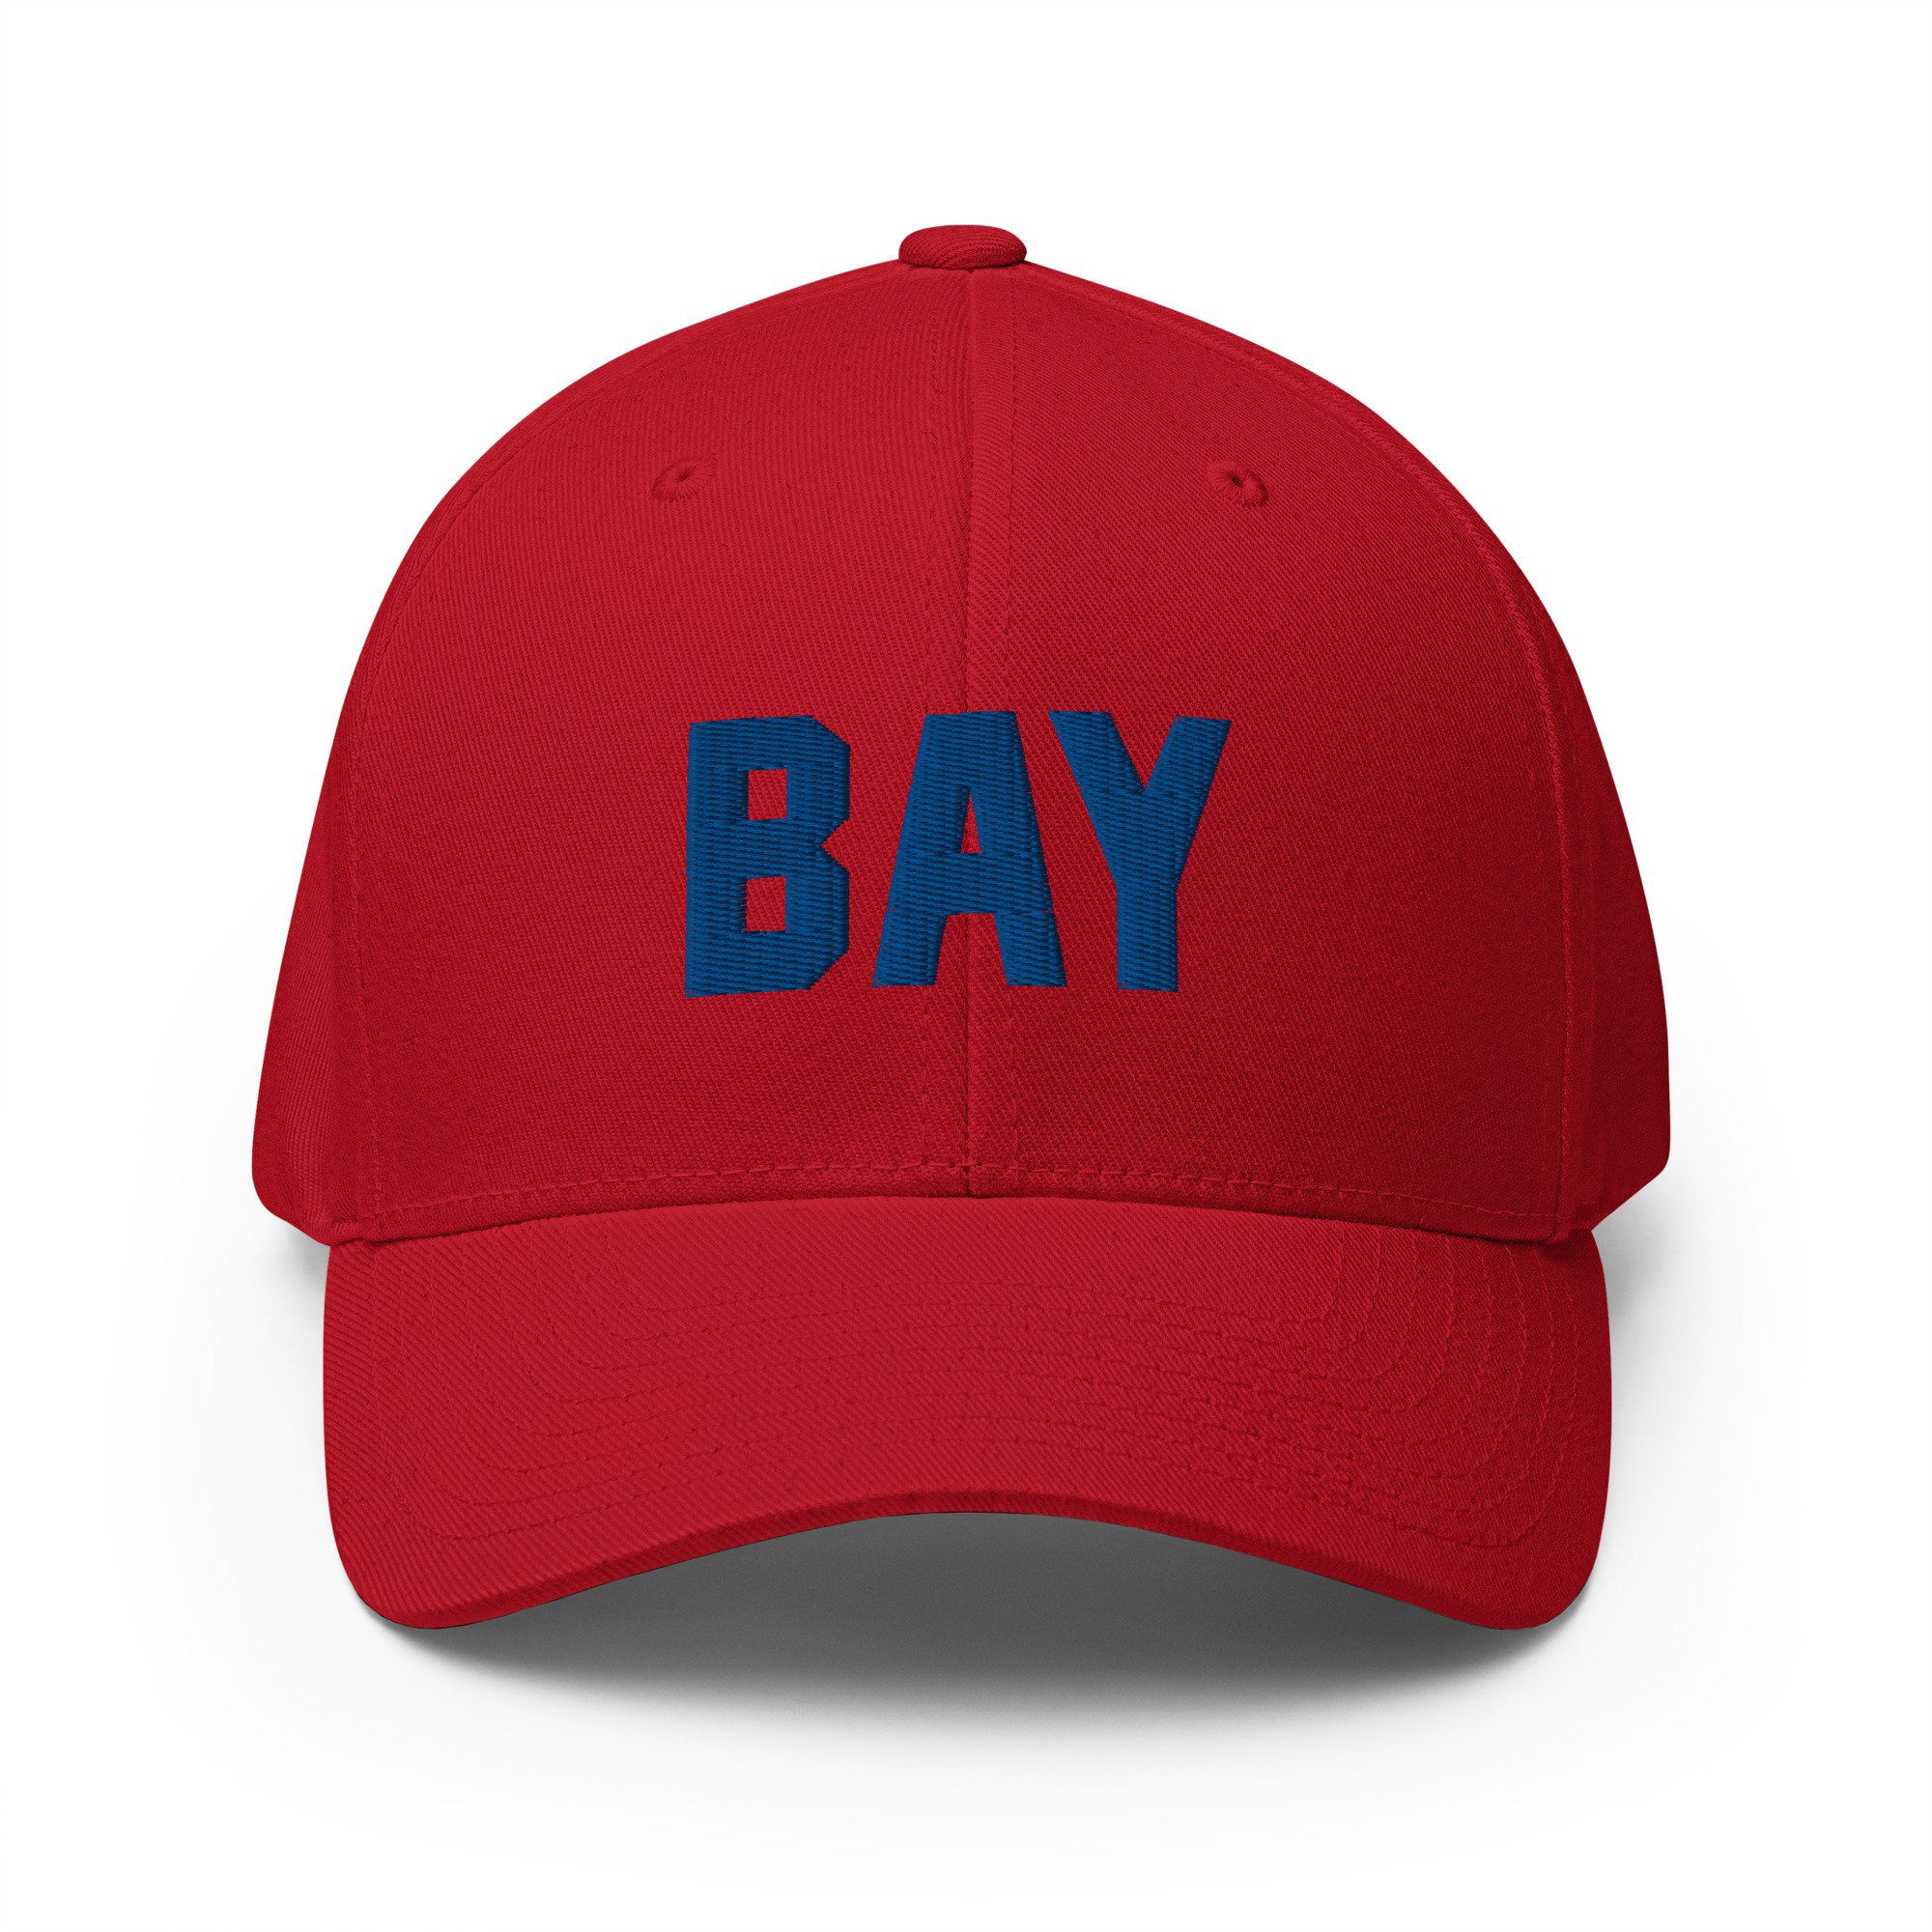 FLEX ON 'EM (Flexfit Embroidered Hat) — BAY ROCKETS ASSOCIATION